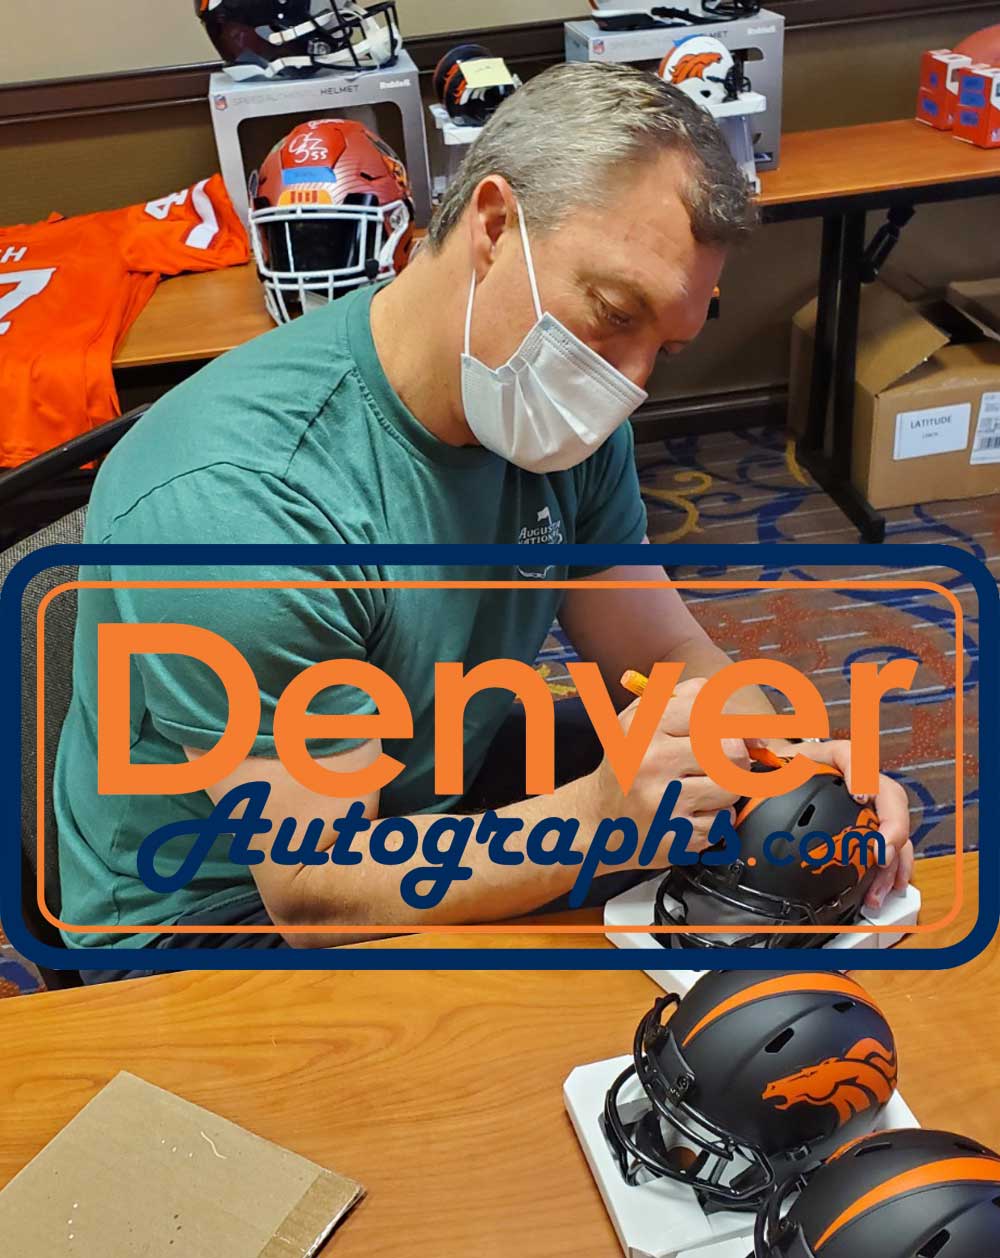 John Lynch Autographed Denver Broncos Eclipse Mini Helmet HOF BAS 31568